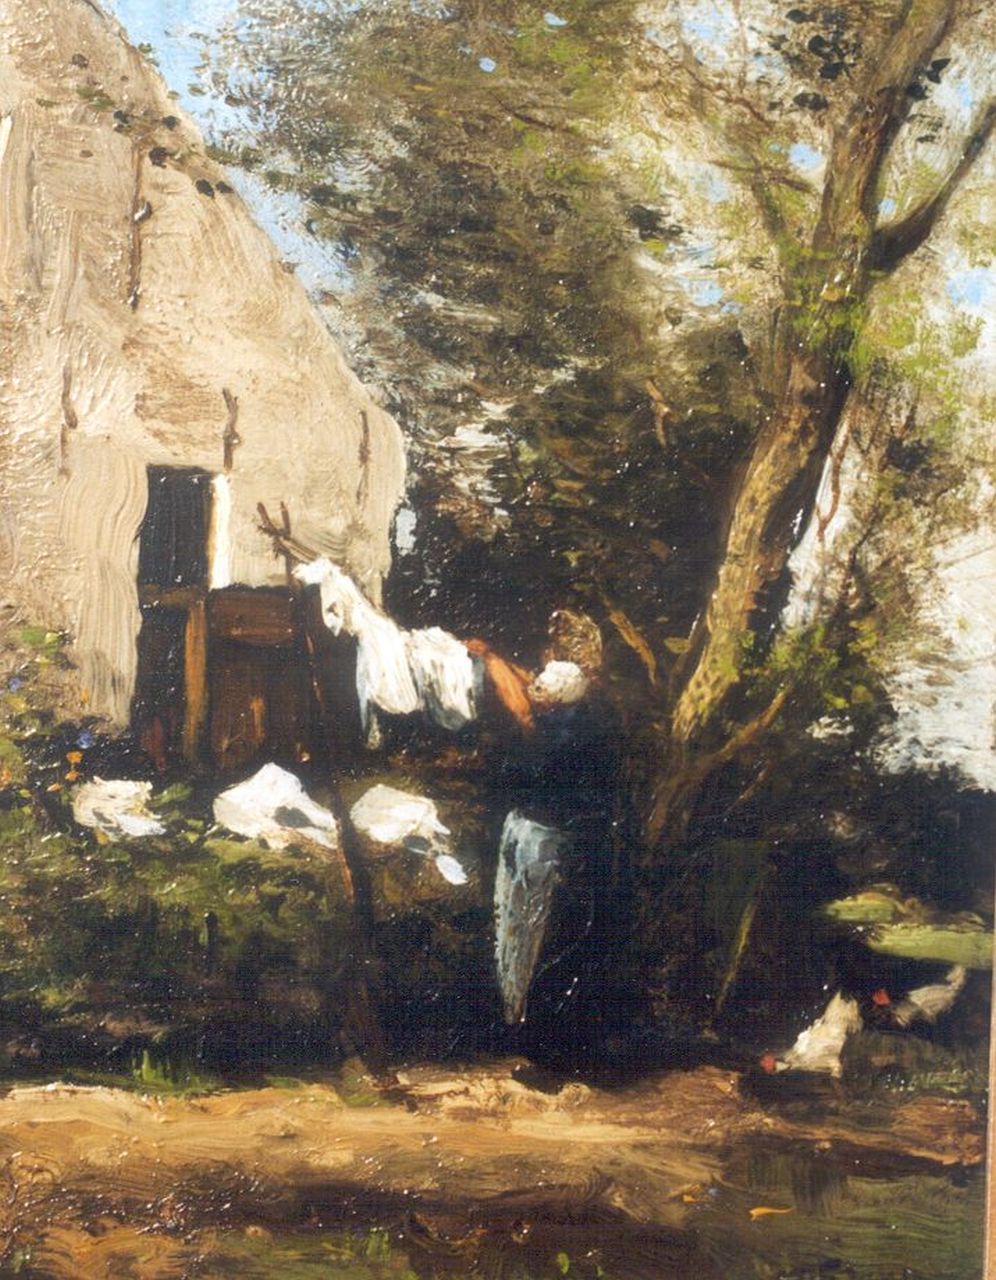 Jansen W.G.F.  | 'Willem' George Frederik Jansen, Wasdag, olieverf op paneel 27,5 x 21,7 cm, gesigneerd rechtsonder